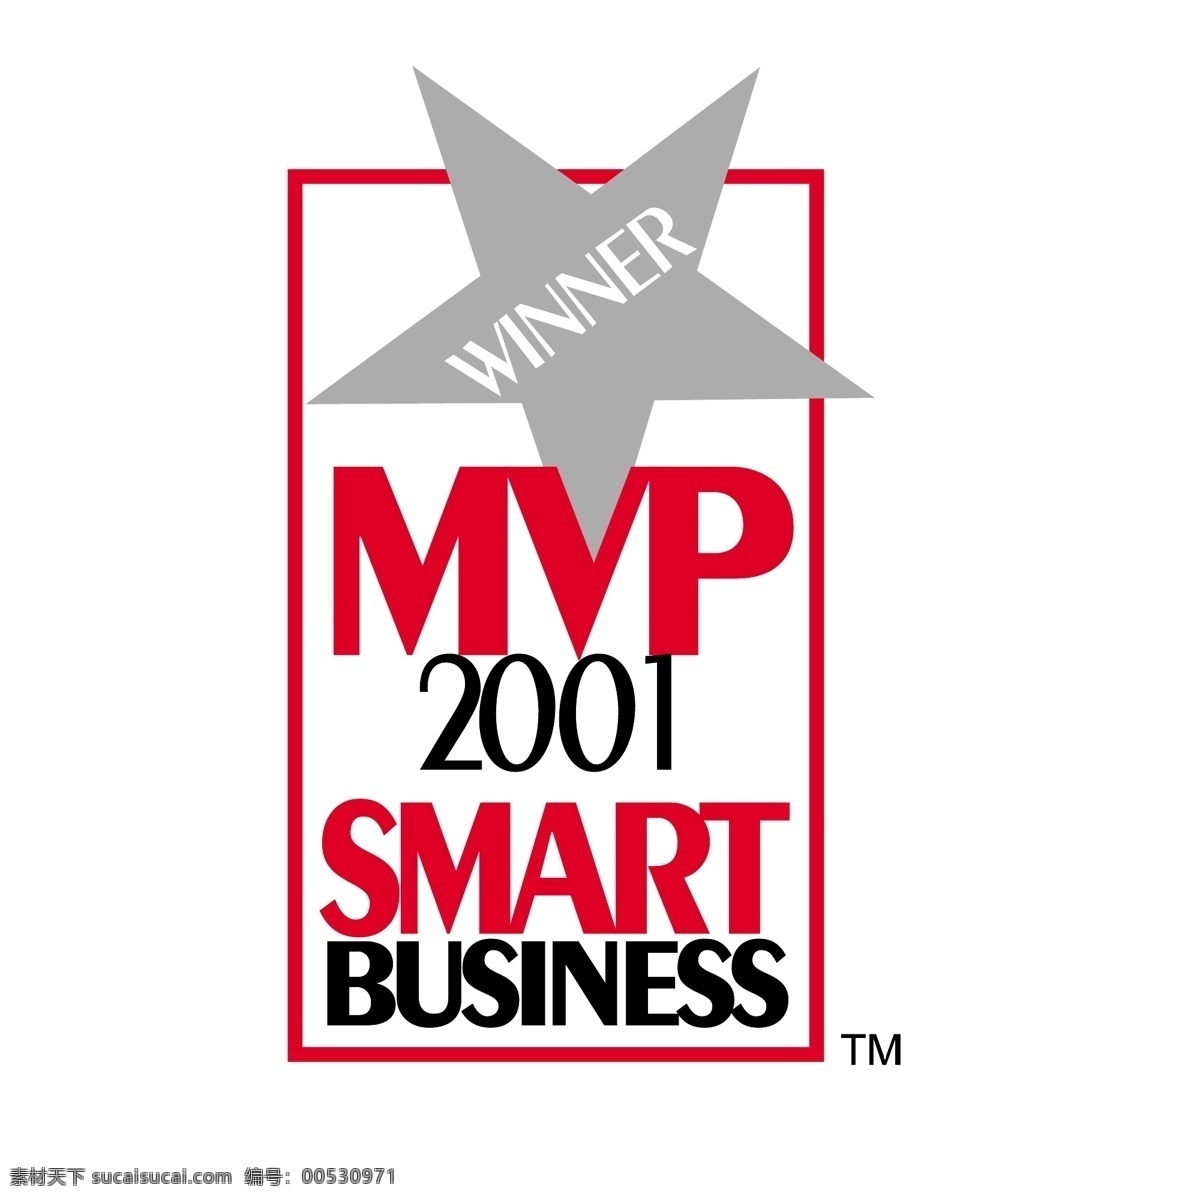 mvp 智能 业务 免费 标识 商务 标志 psd源文件 logo设计